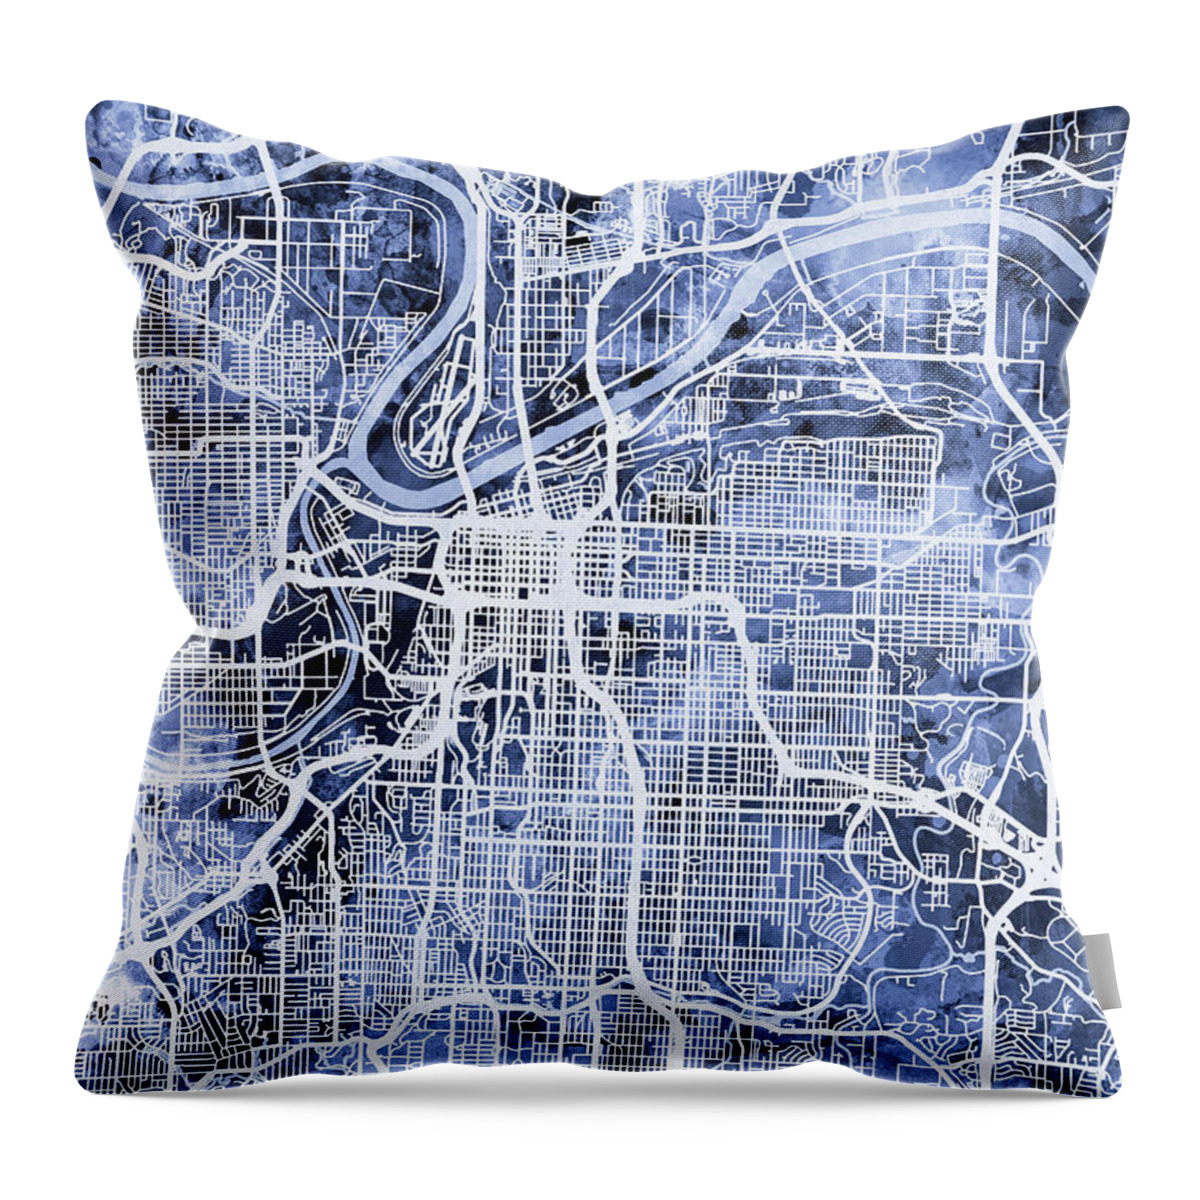 Kansas City Throw Pillow featuring the digital art Kansas City Missouri City Map by Michael Tompsett